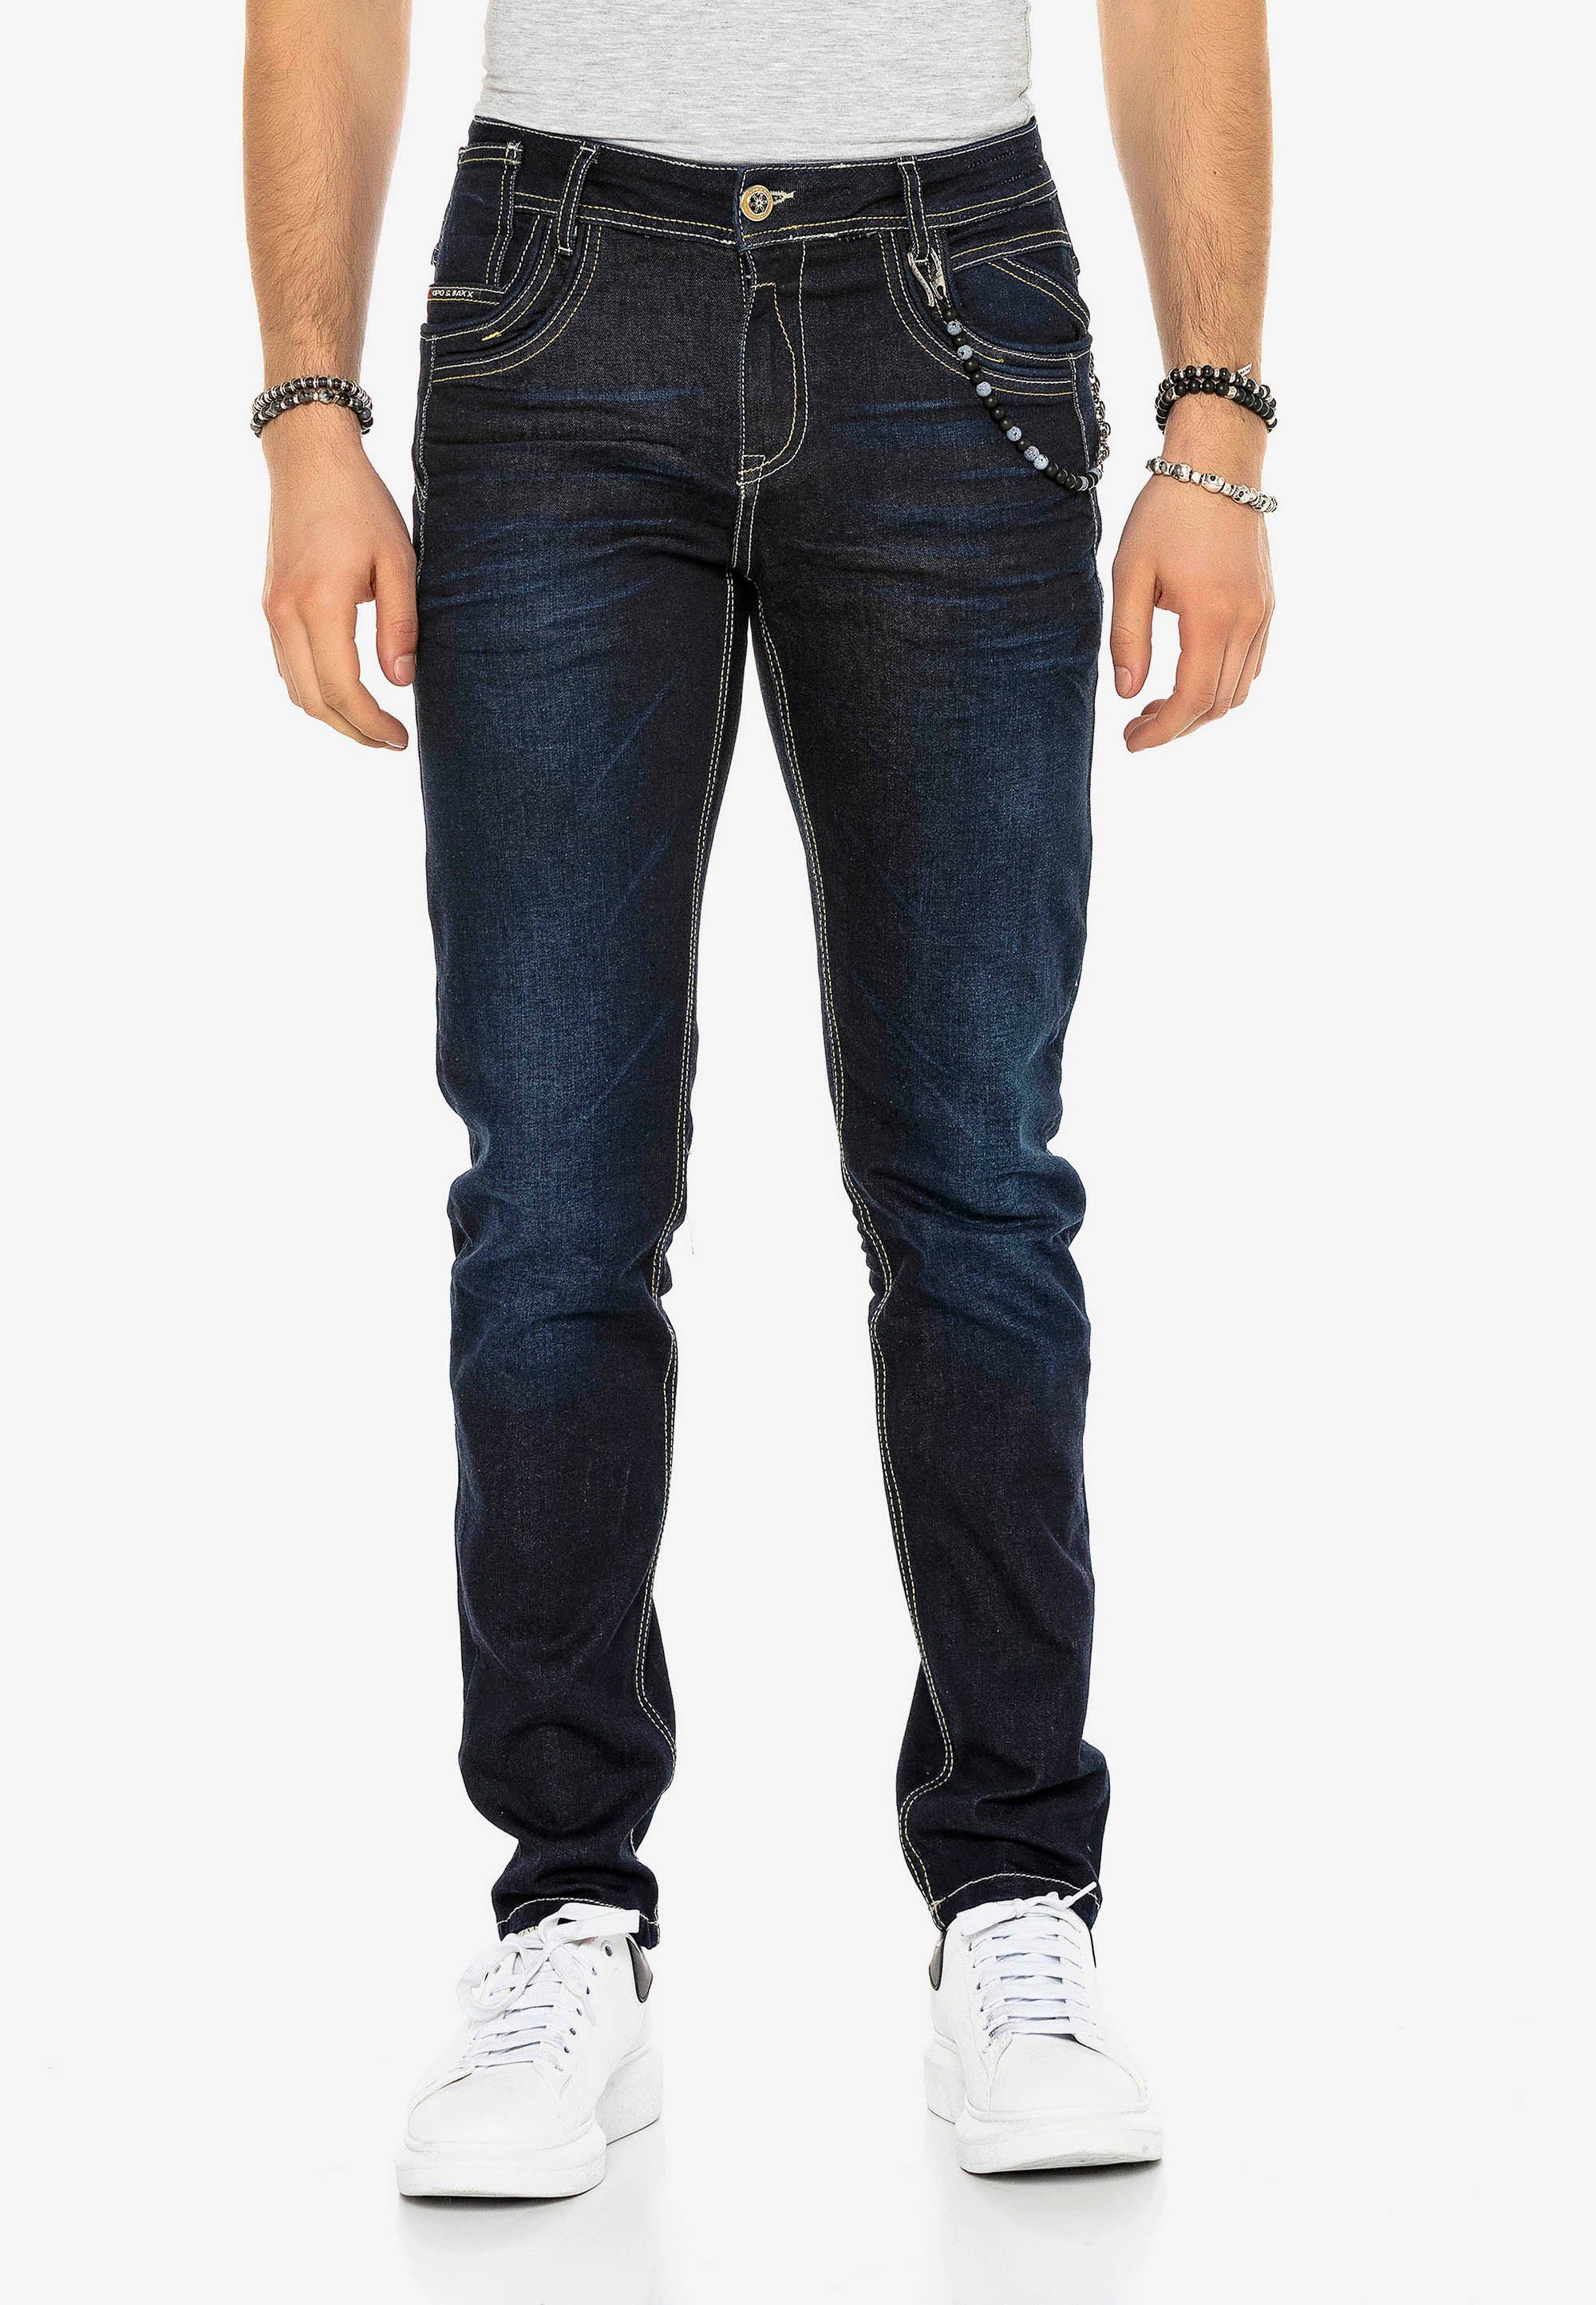 Cipo & Bequeme stilvollen in mit Baxx Kontrastnähten Jeans Fit Straight